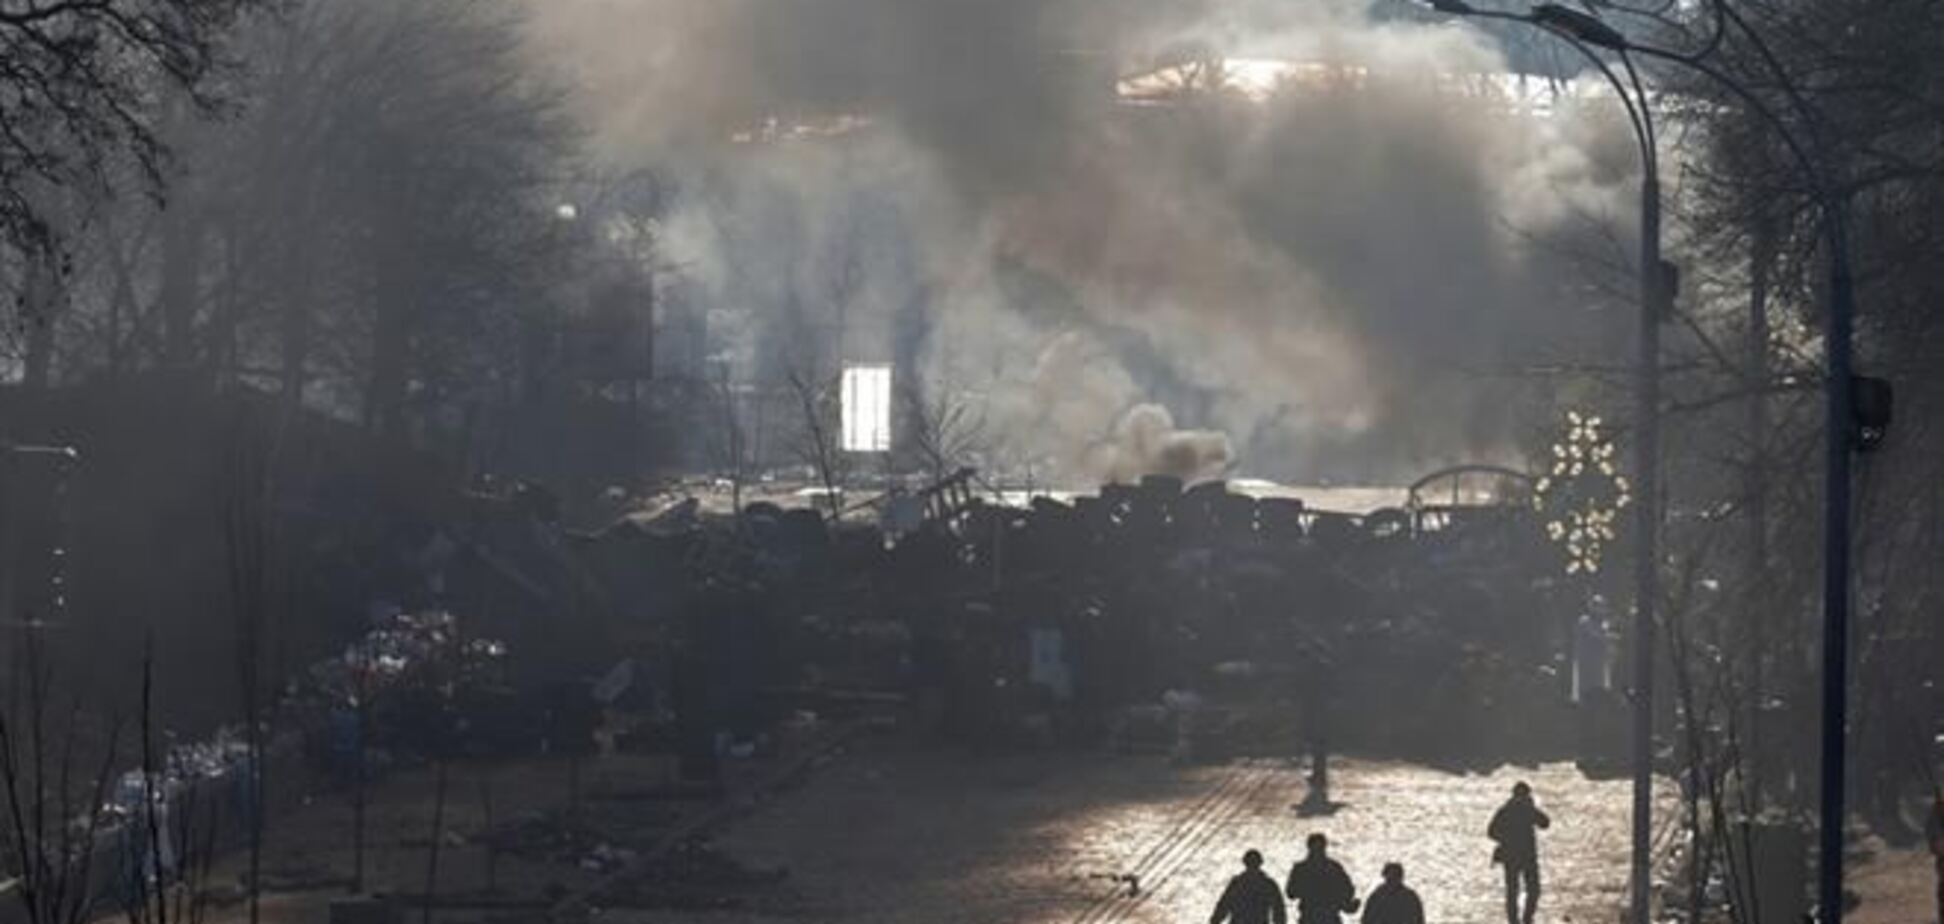 За меддопомогою на Евромайдане звернулося понад 600 постраждалих